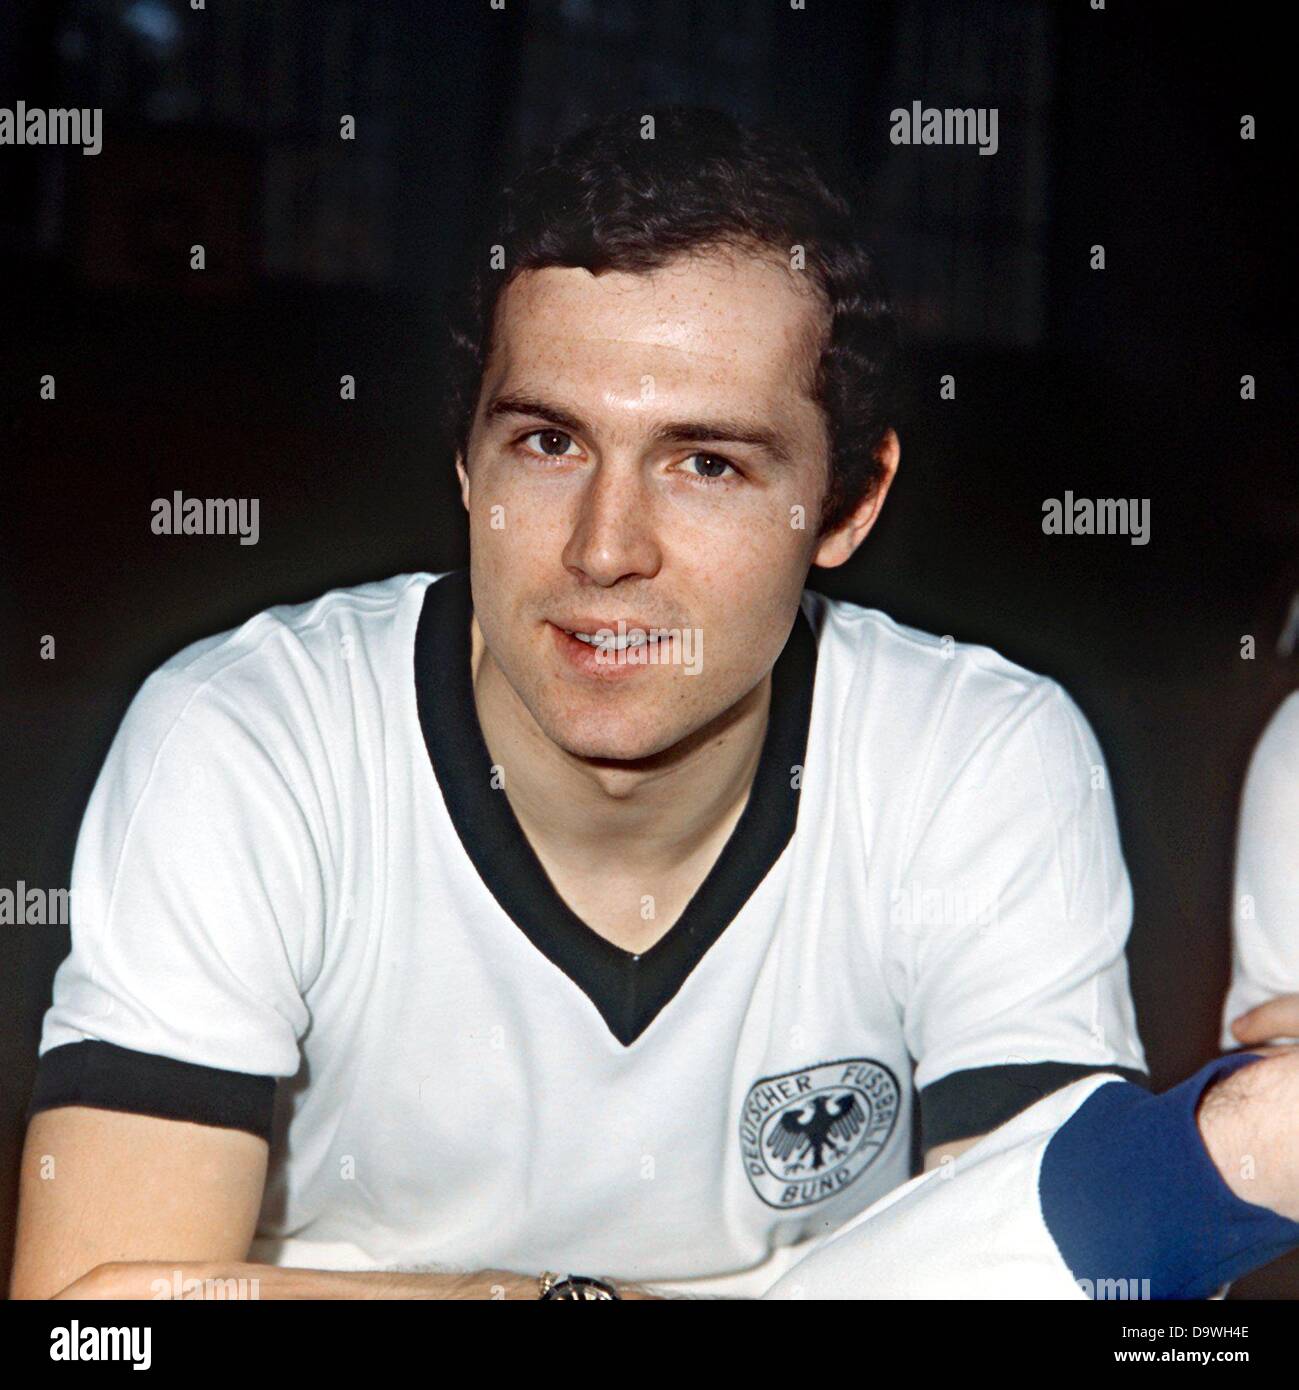 Franz Beckenbauer mit der Nationalmannschaft Trikot während seiner Zeit als aktiver Spieler (undatiertes Bild). Stockfoto